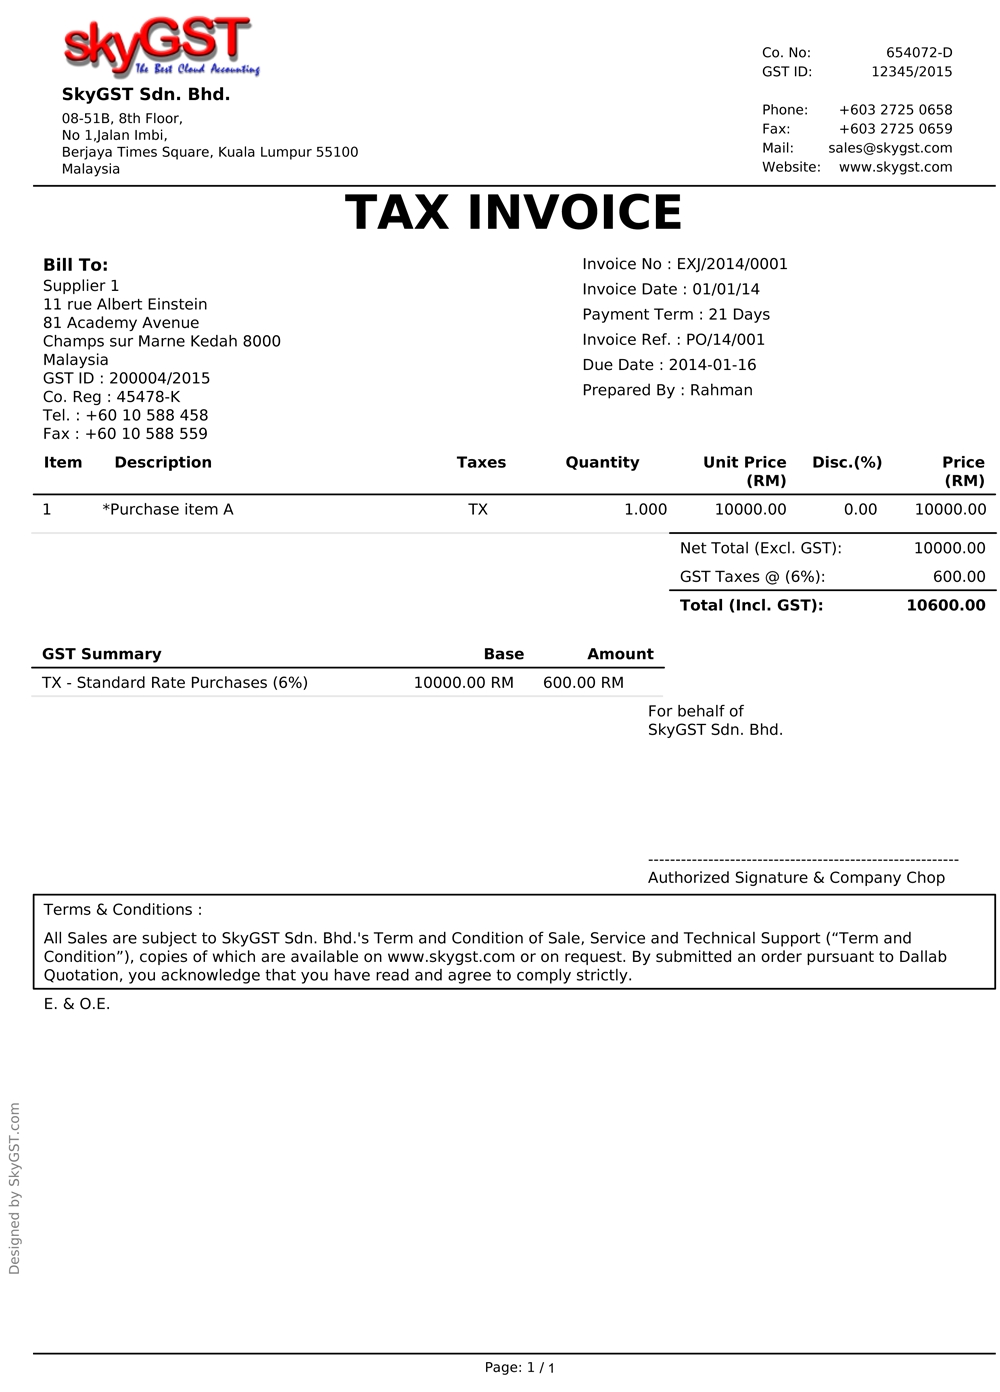 sample gst invoice malaysia gst tax invoice format gst tax gst tax invoice template